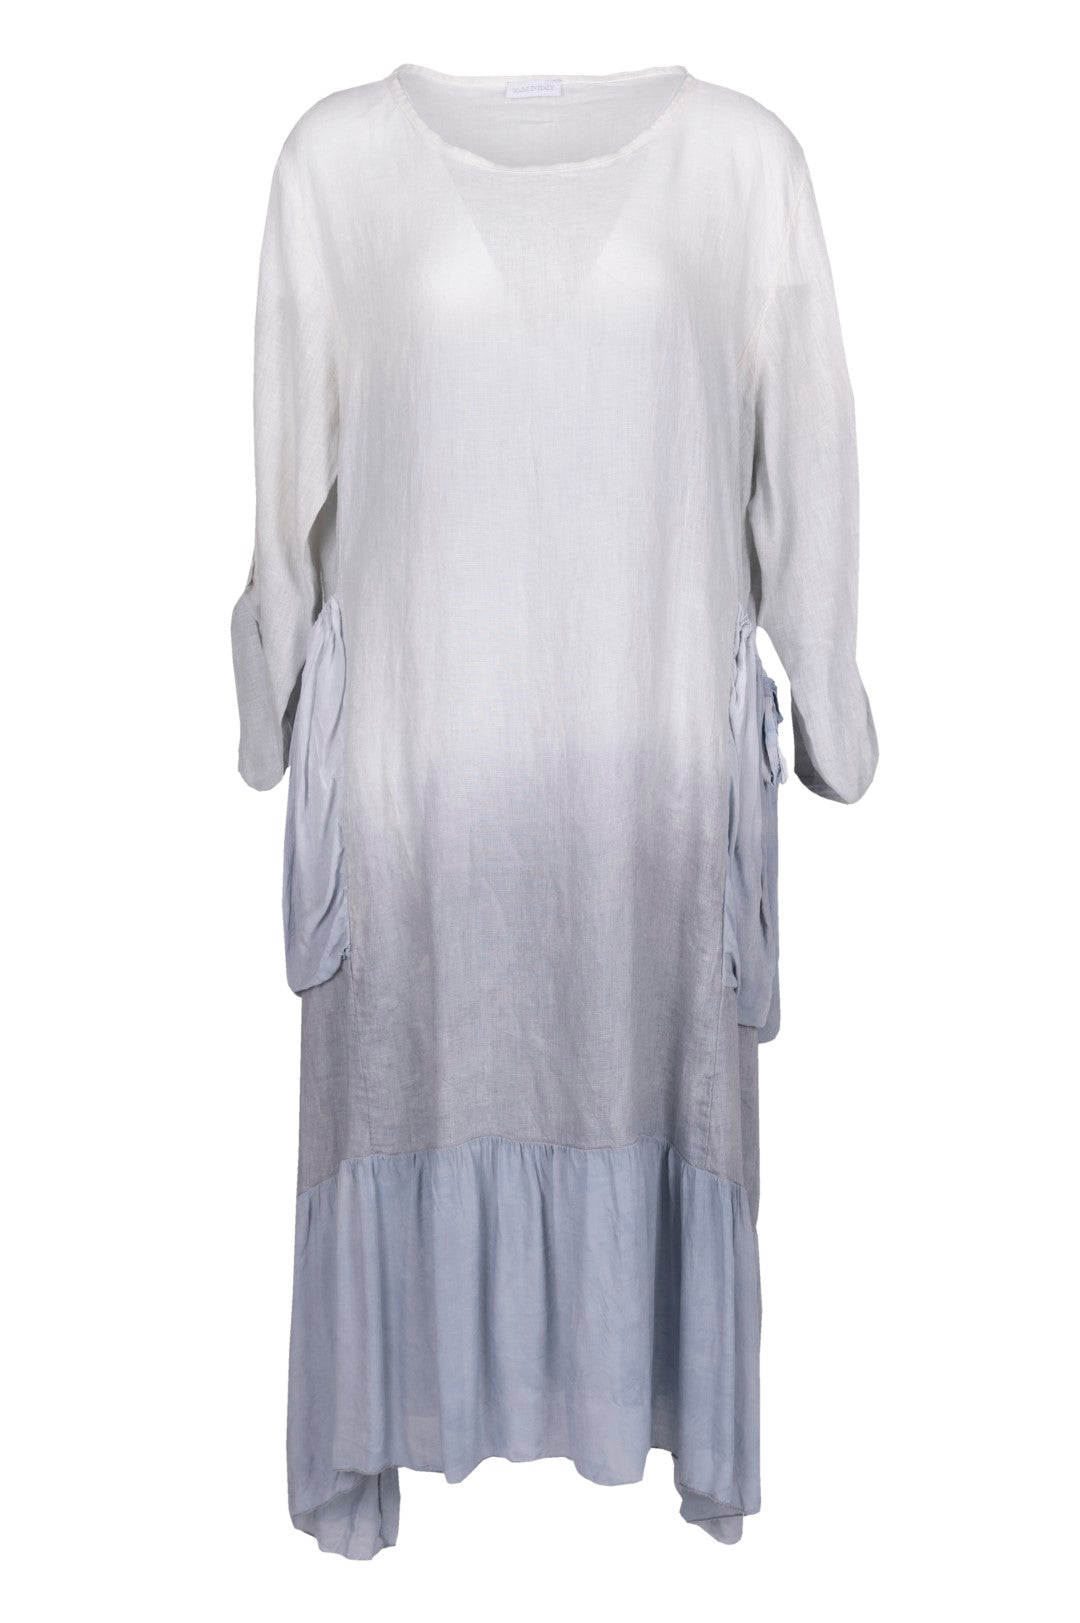 Tie-Dye Gradient Linen Dress With Side Pockets